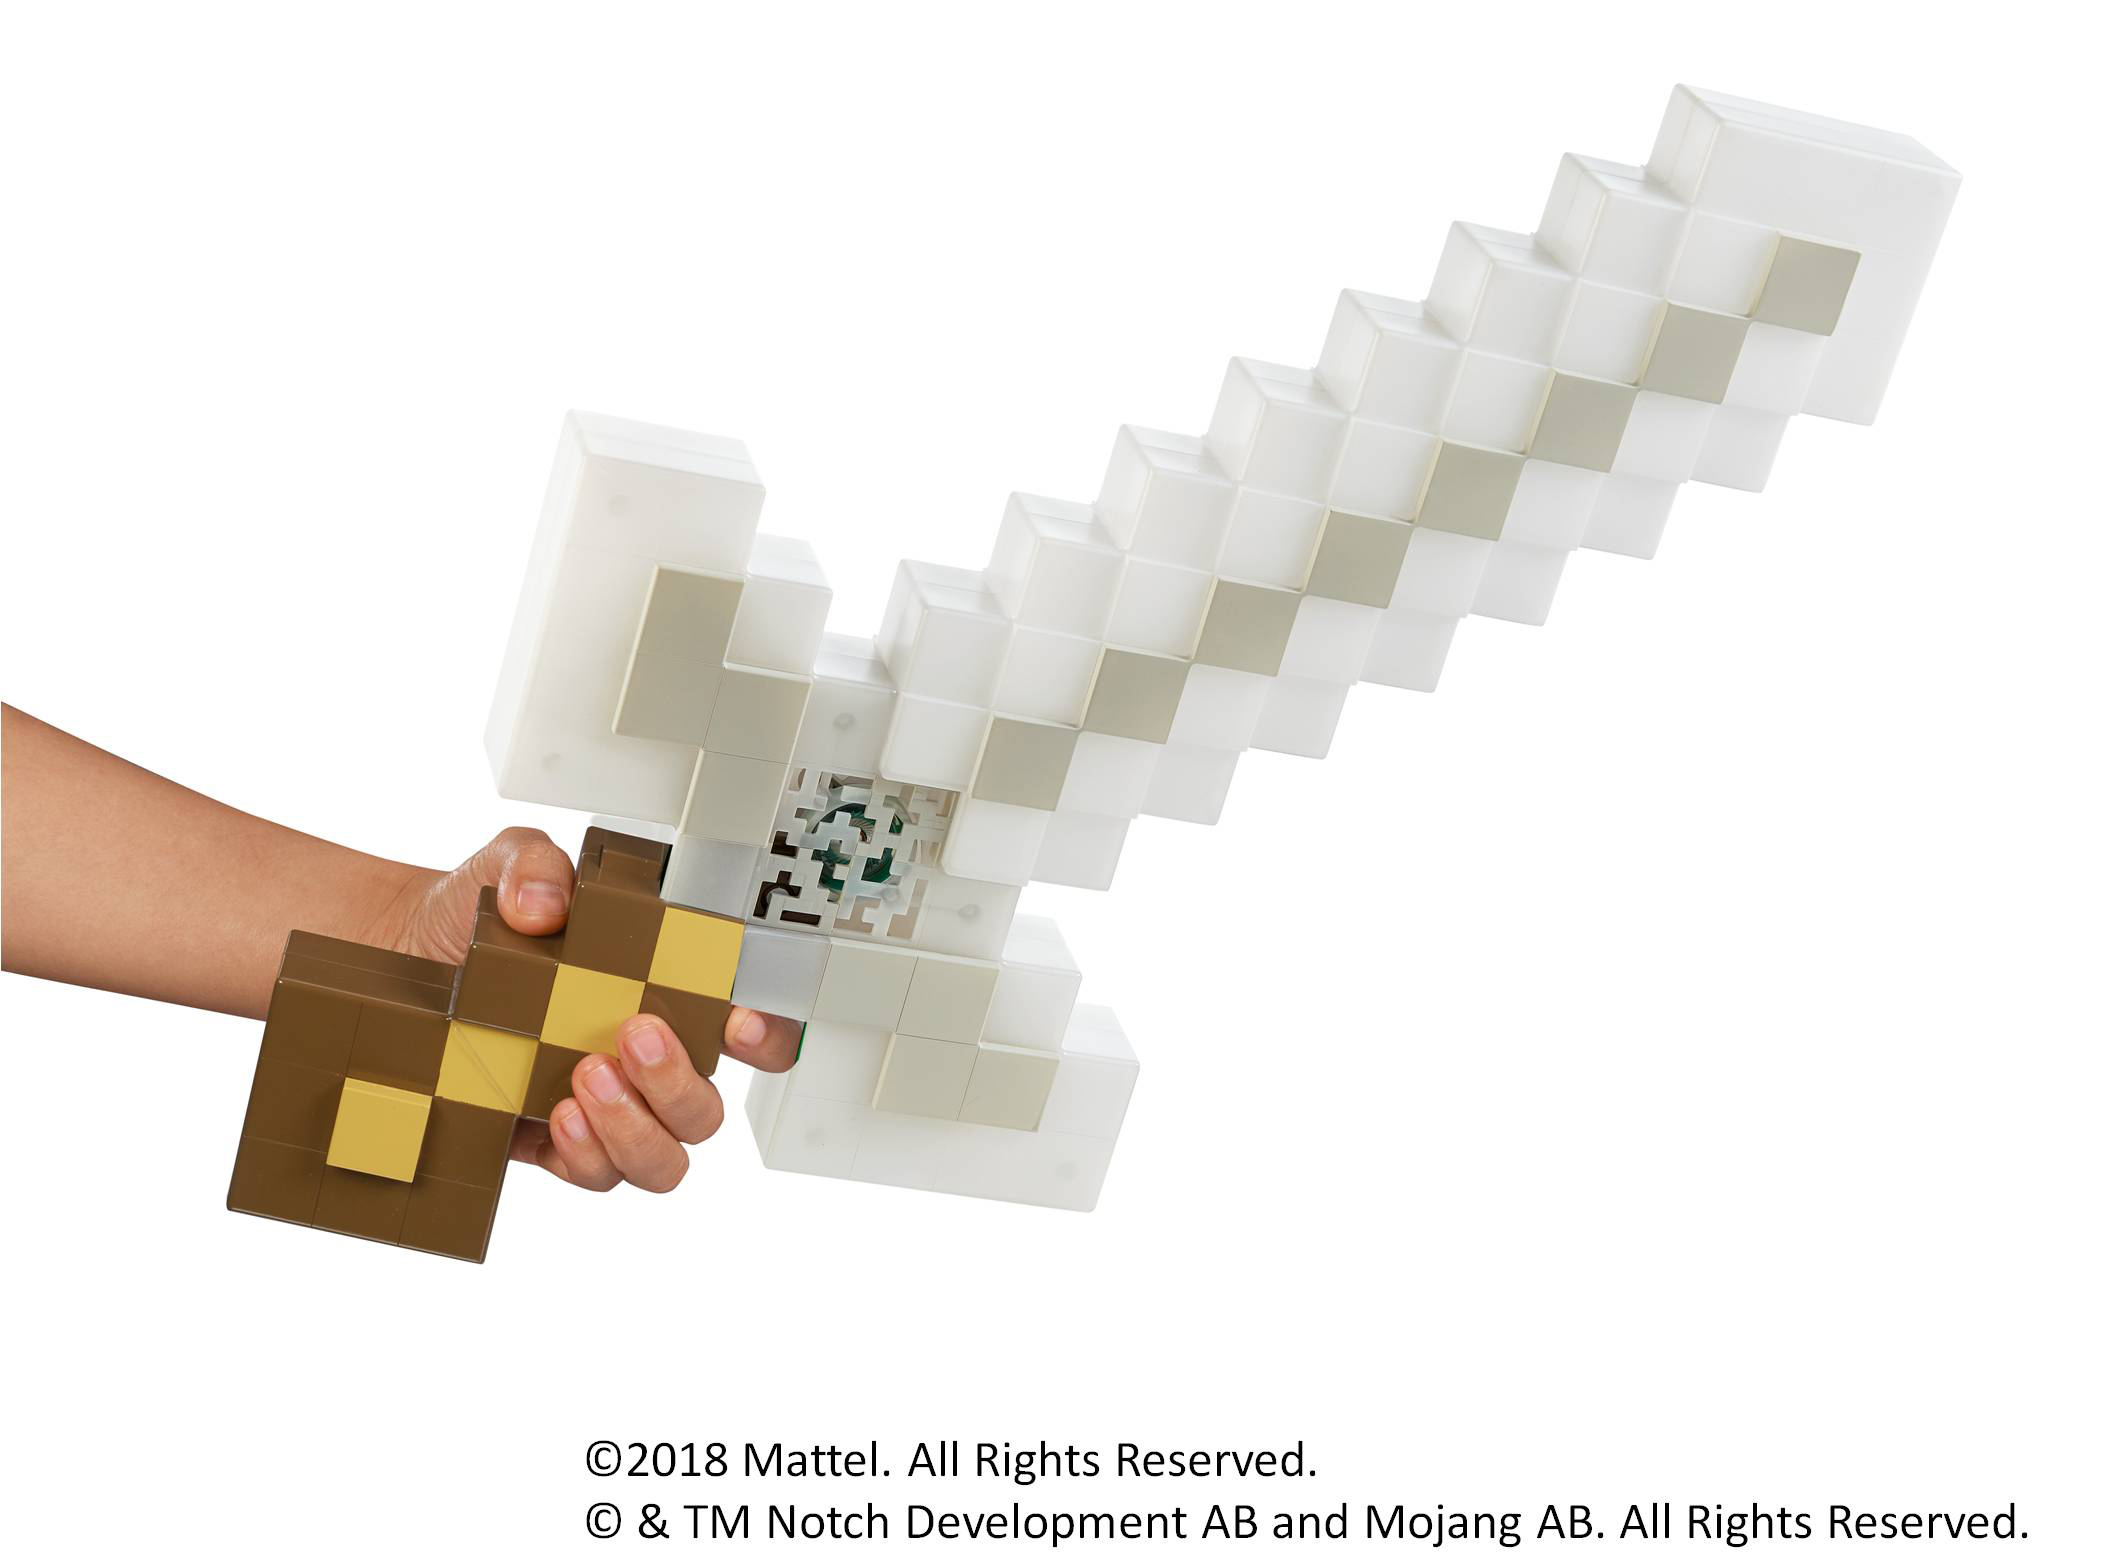 光る 鳴る 戦える Minecraft に登場する剣が発売決定 Game Watch